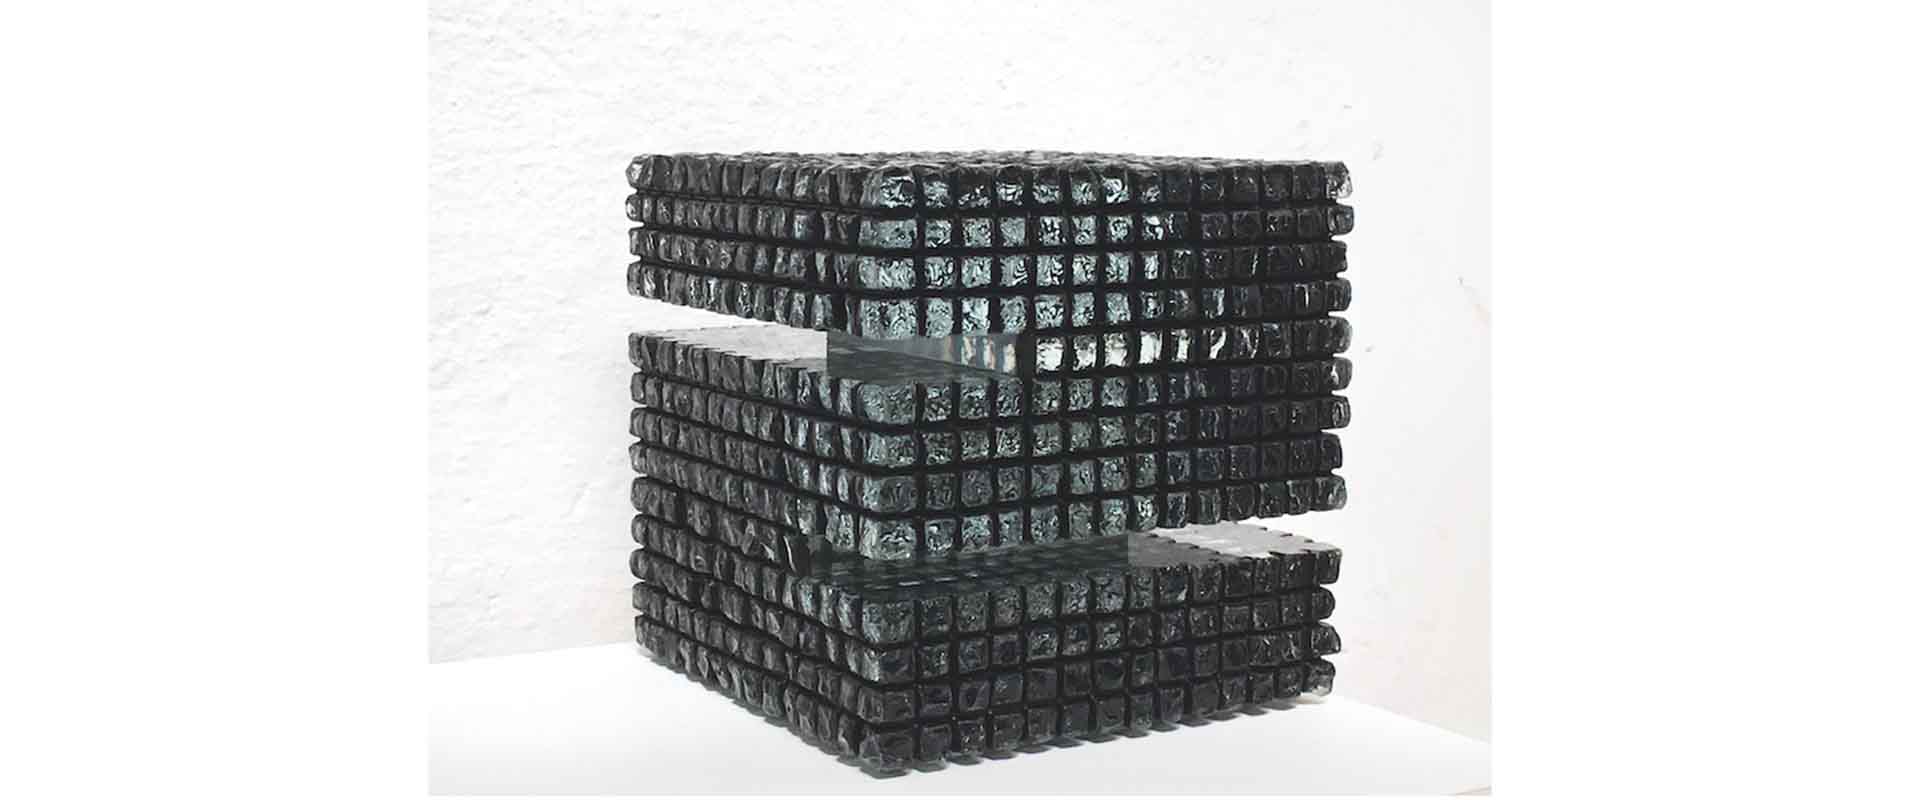 schwarz ist schön I – 2021, Verbundglasblock gesägt, gemeißelt, gebrochen und patiniert, 14 x 14 x 14 cm